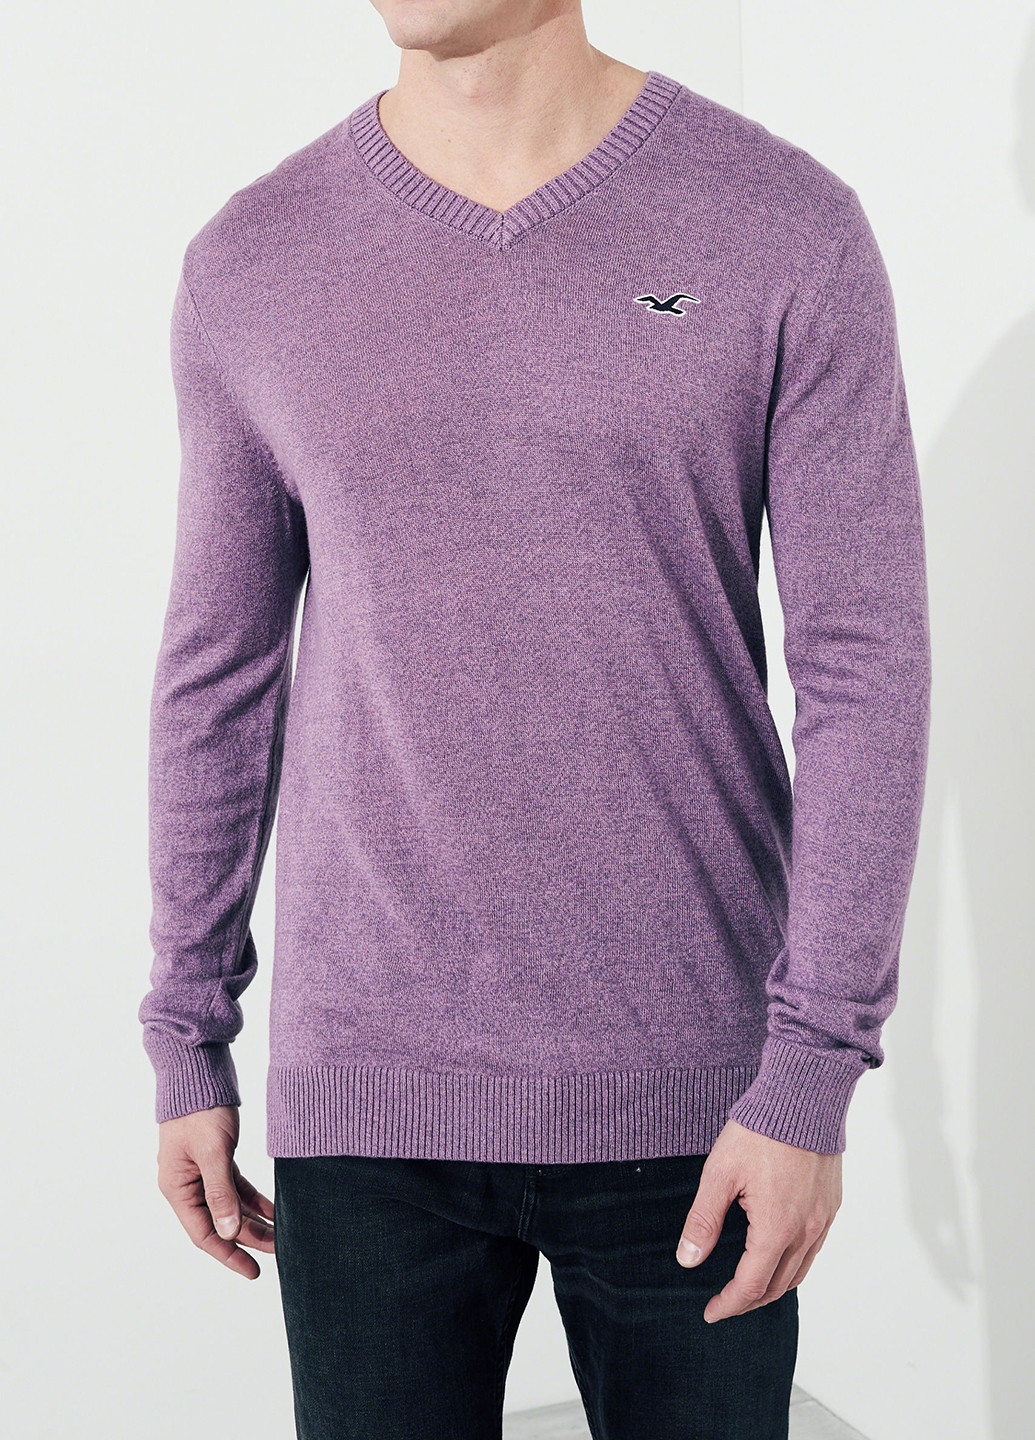 Сиреневый демисезонный пуловер пуловер Hollister